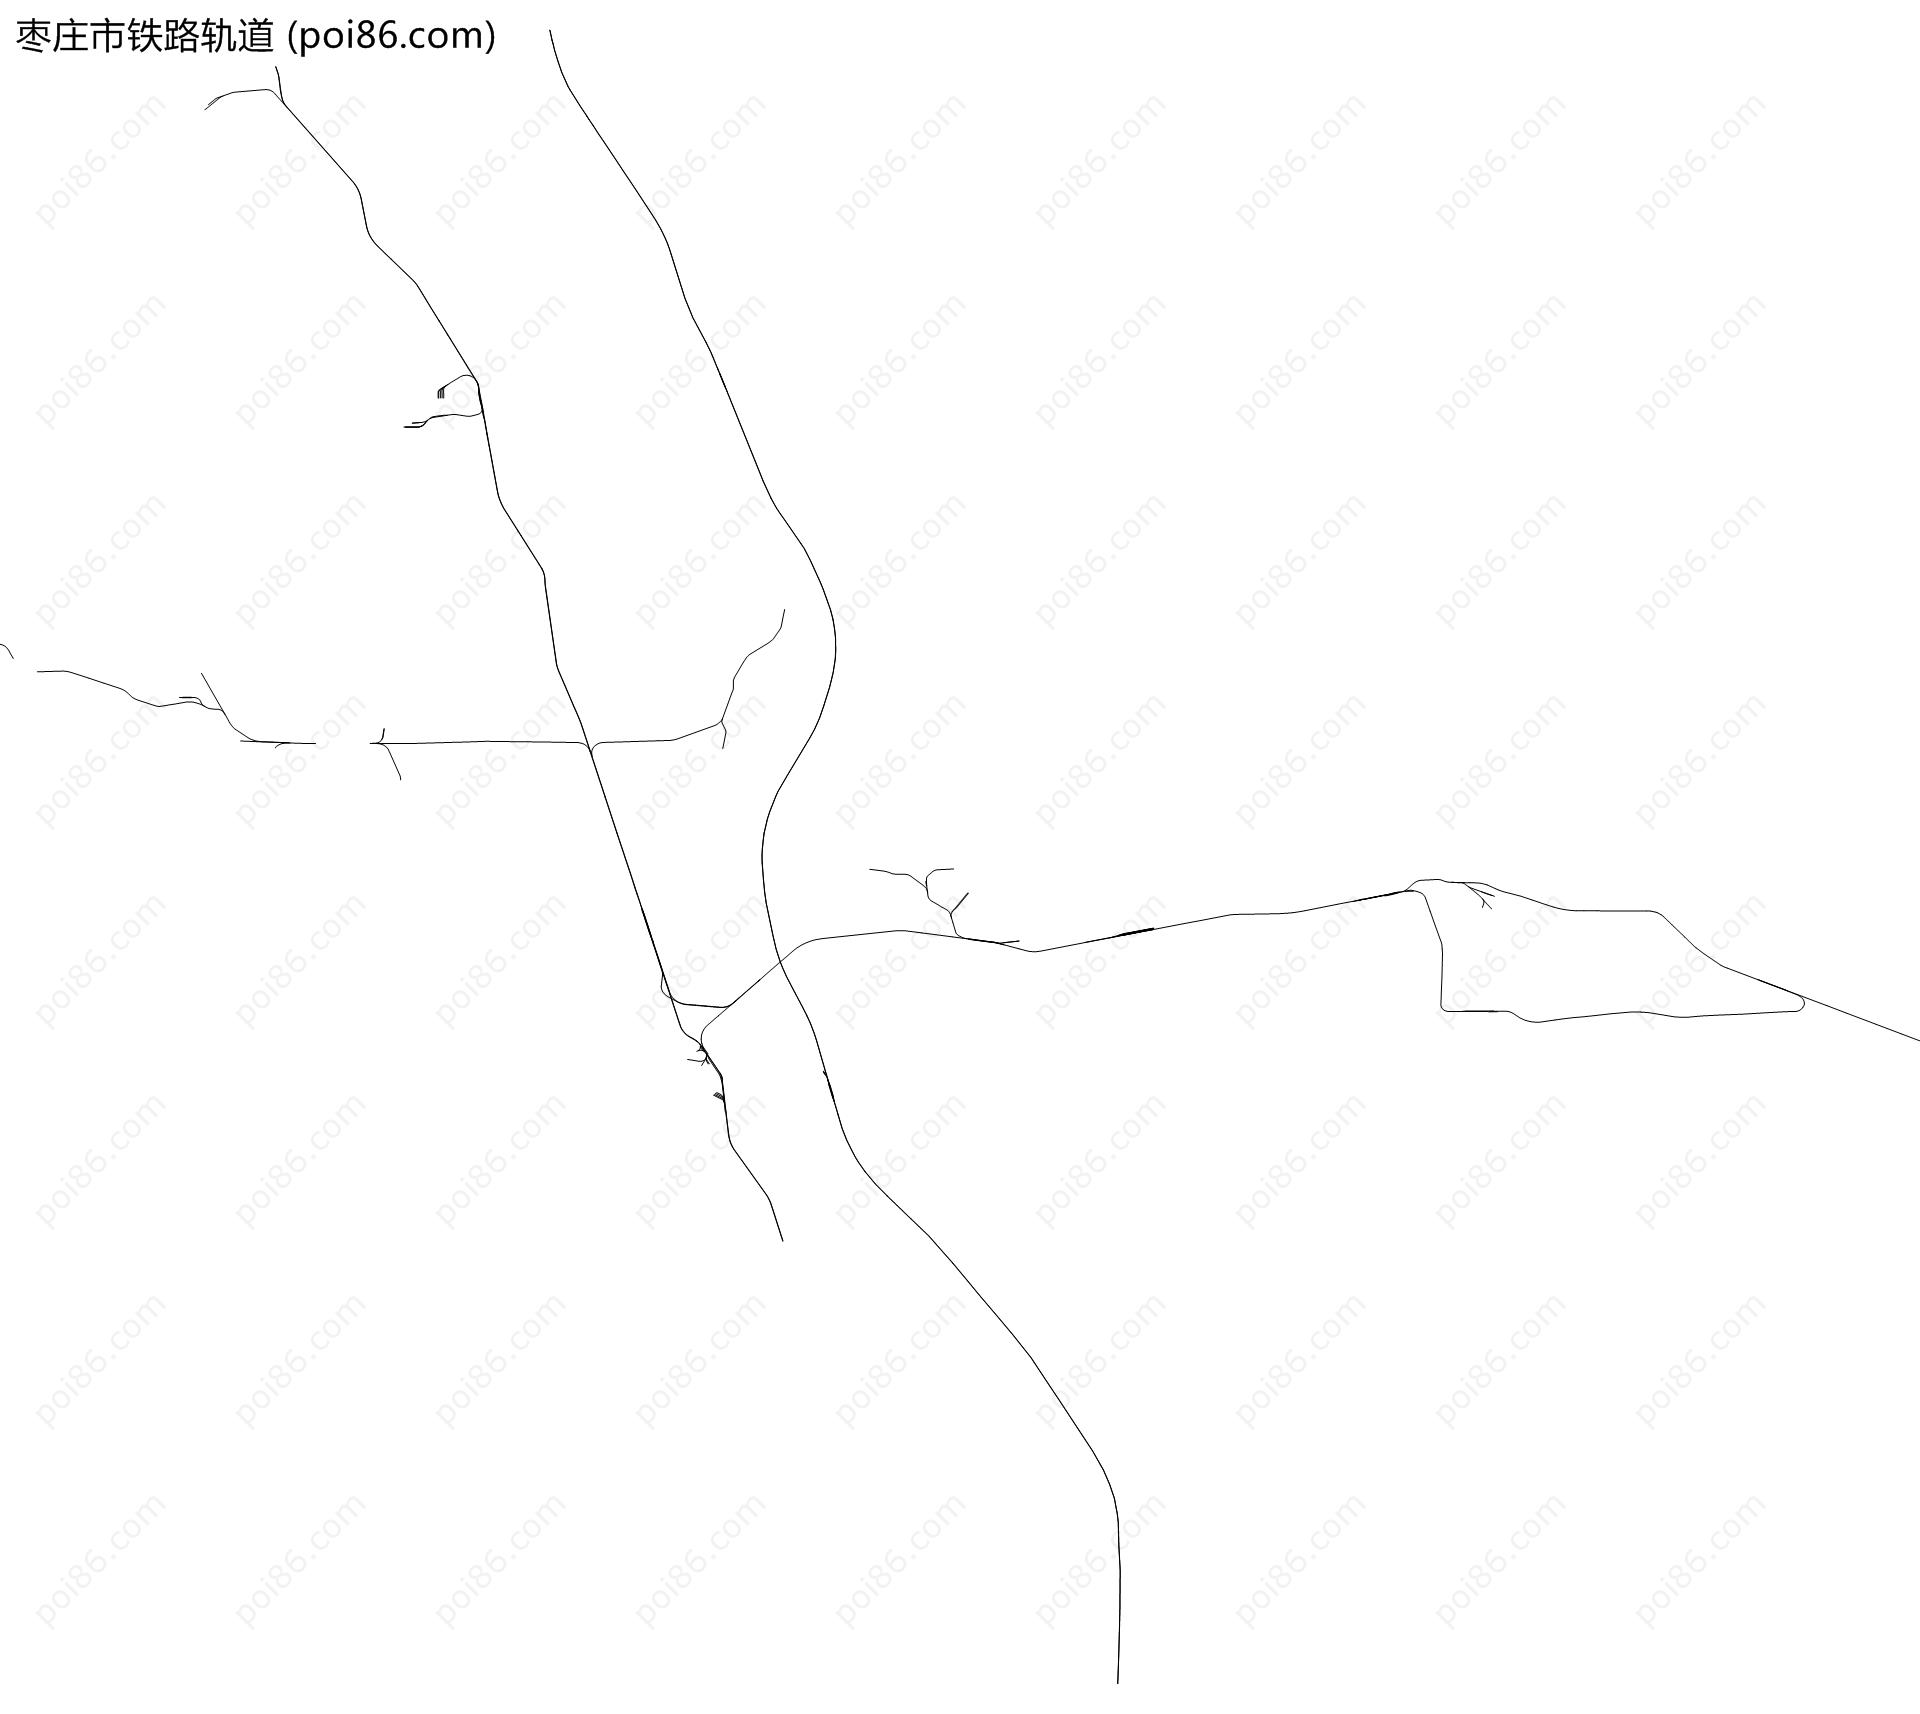 枣庄市铁路轨道地图